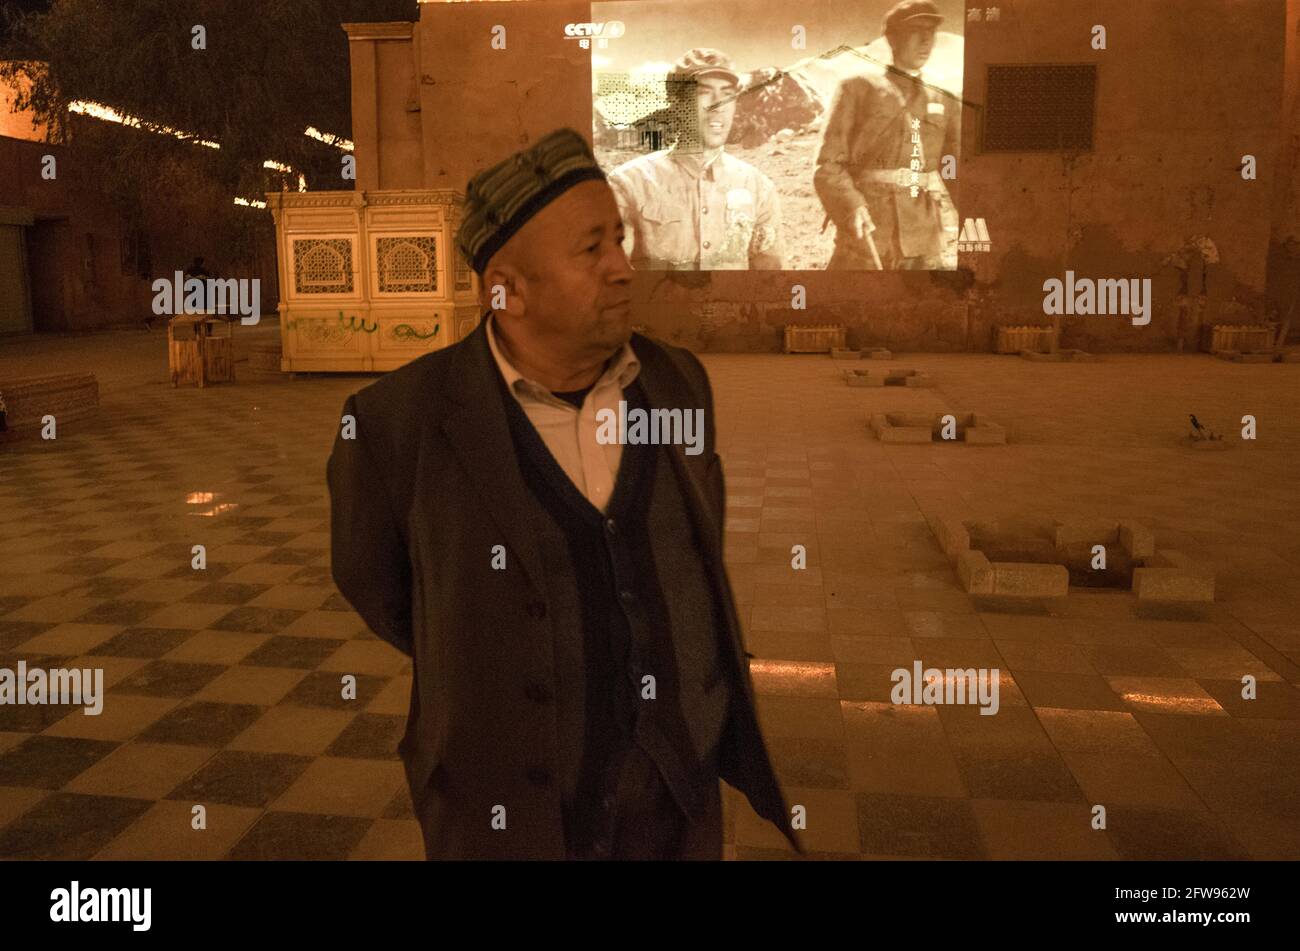 Uyhgur man au premier plan devant la caméra Alors que derrière un film noir et blanc sur les Chinois La révolution est affichée sur un écran.Kashgar 2019 Banque D'Images